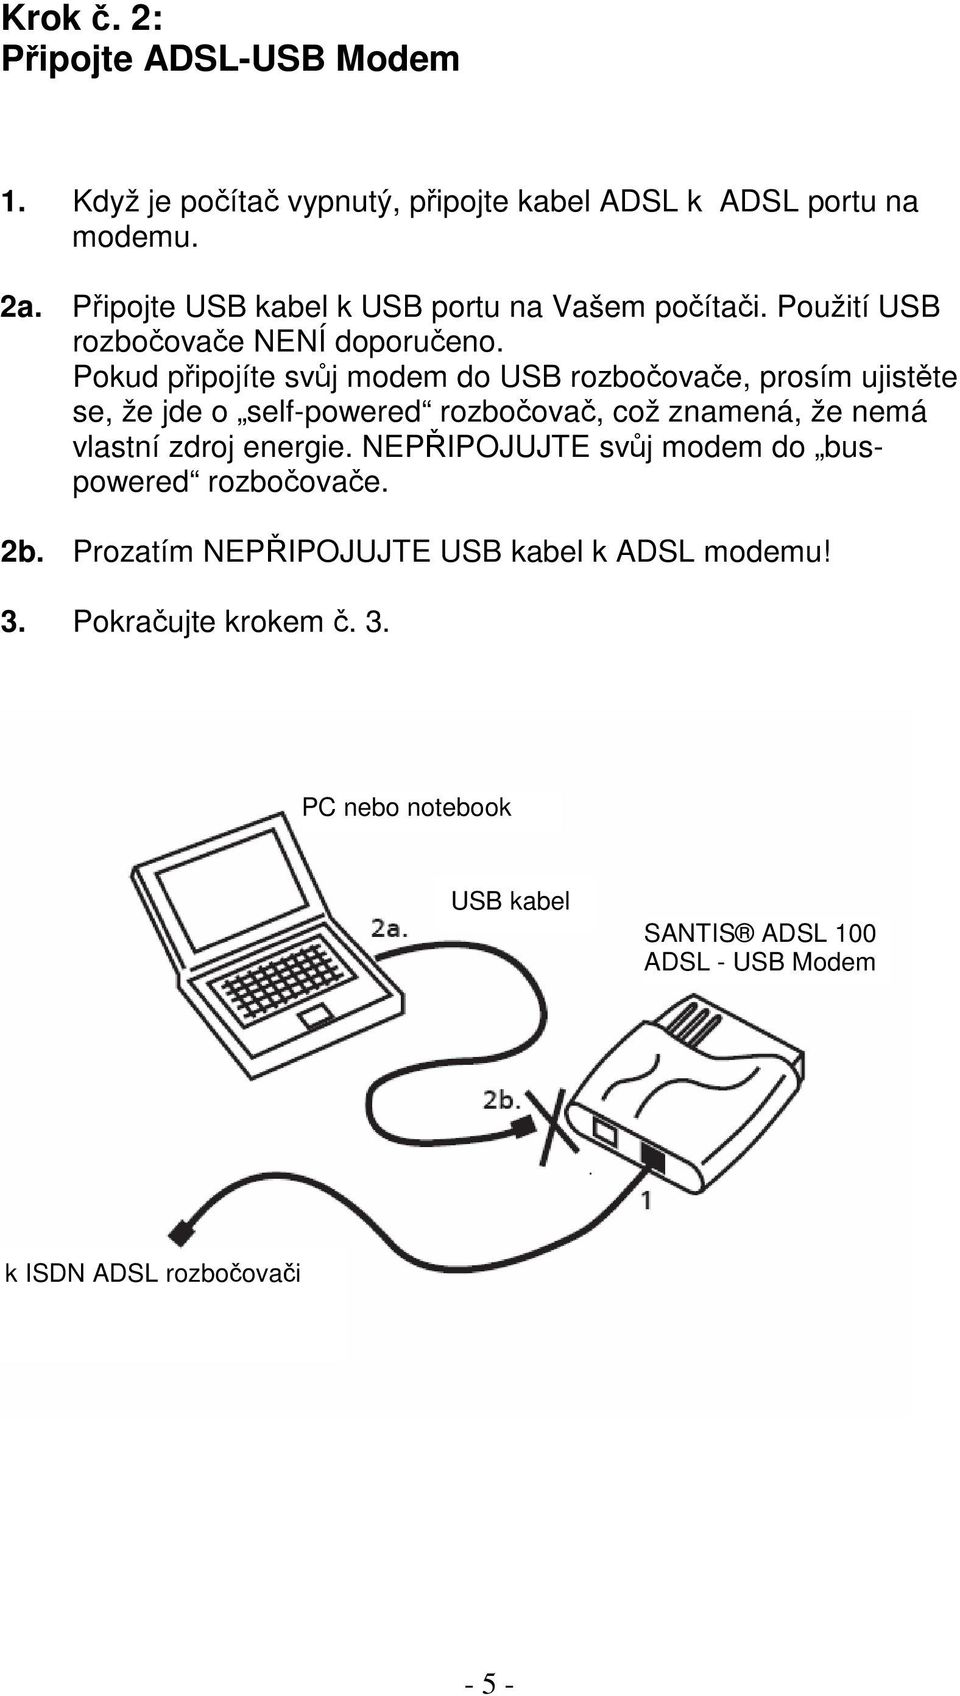 Pokud pipojíte svj modem do USB rozboovae, prosím ujistte se, že jde o self-powered rozboova, což znamená, že nemá vlastní zdroj